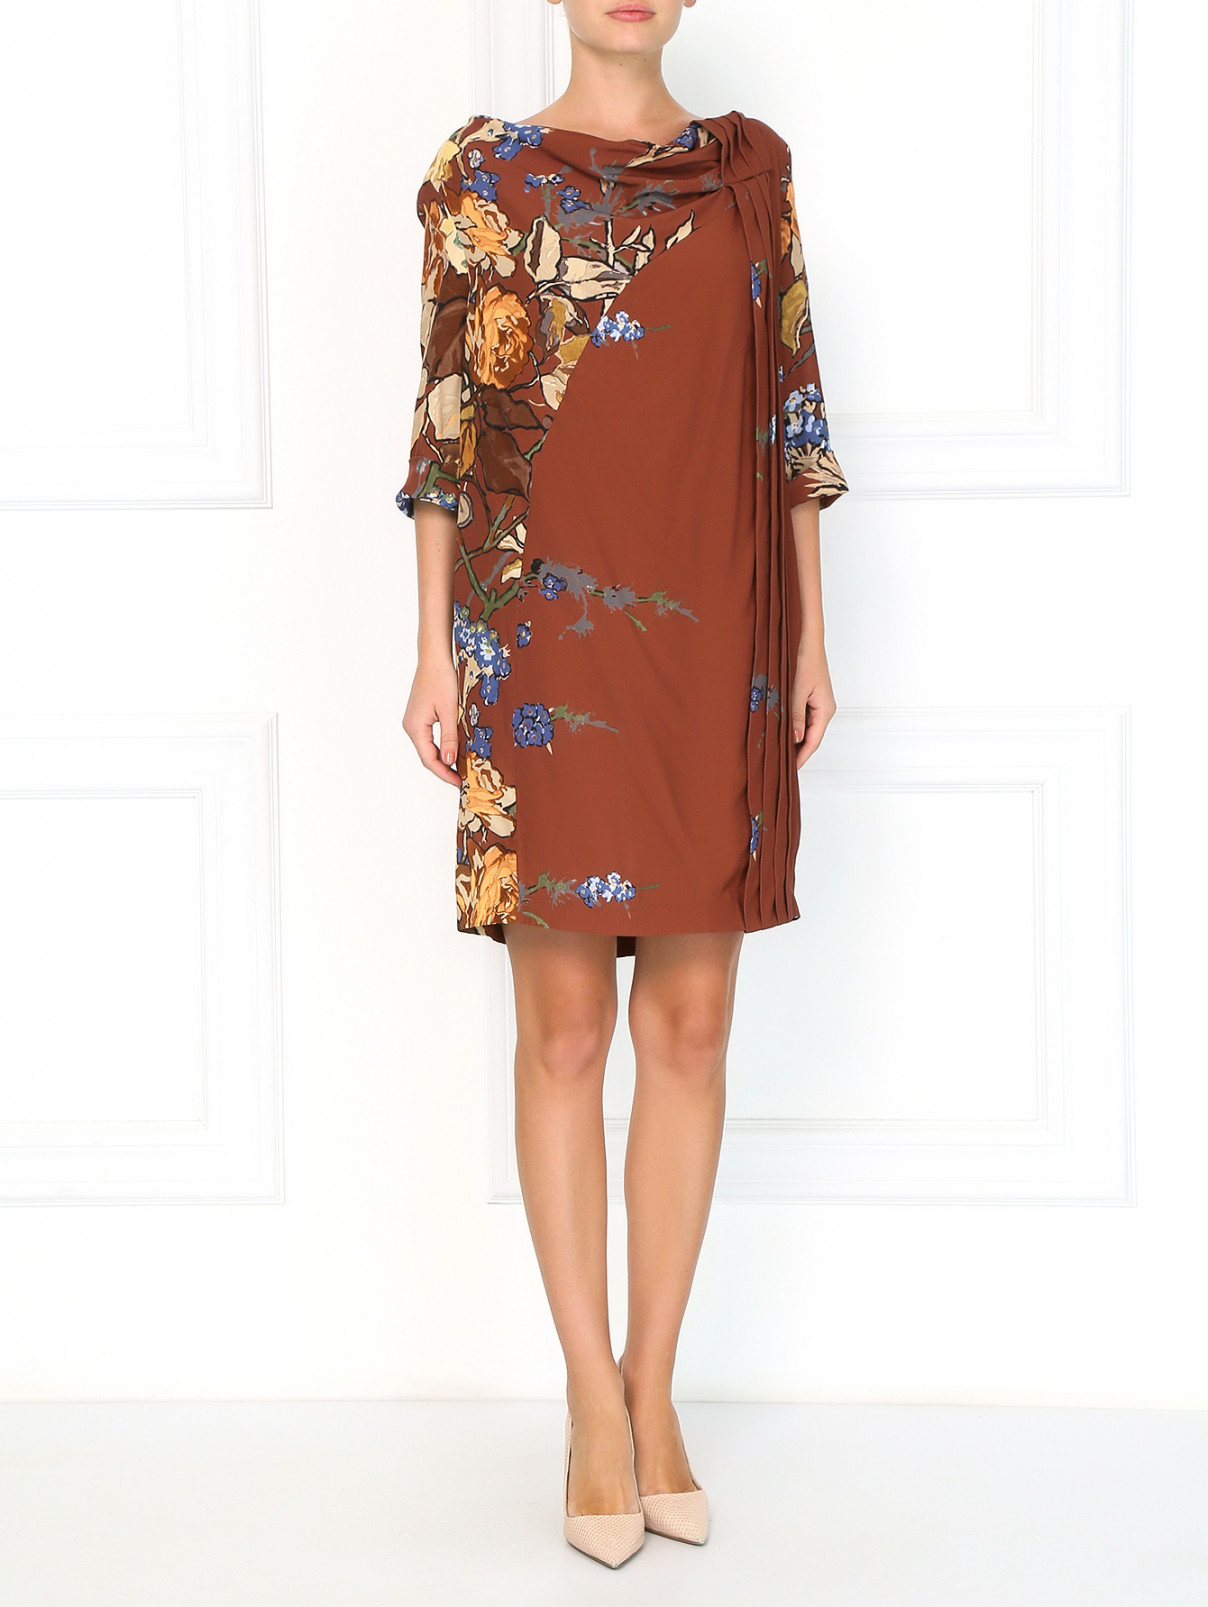 Свободное платье-мини с цветочным узором Antonio Marras  –  Модель Общий вид  – Цвет:  Коричневый